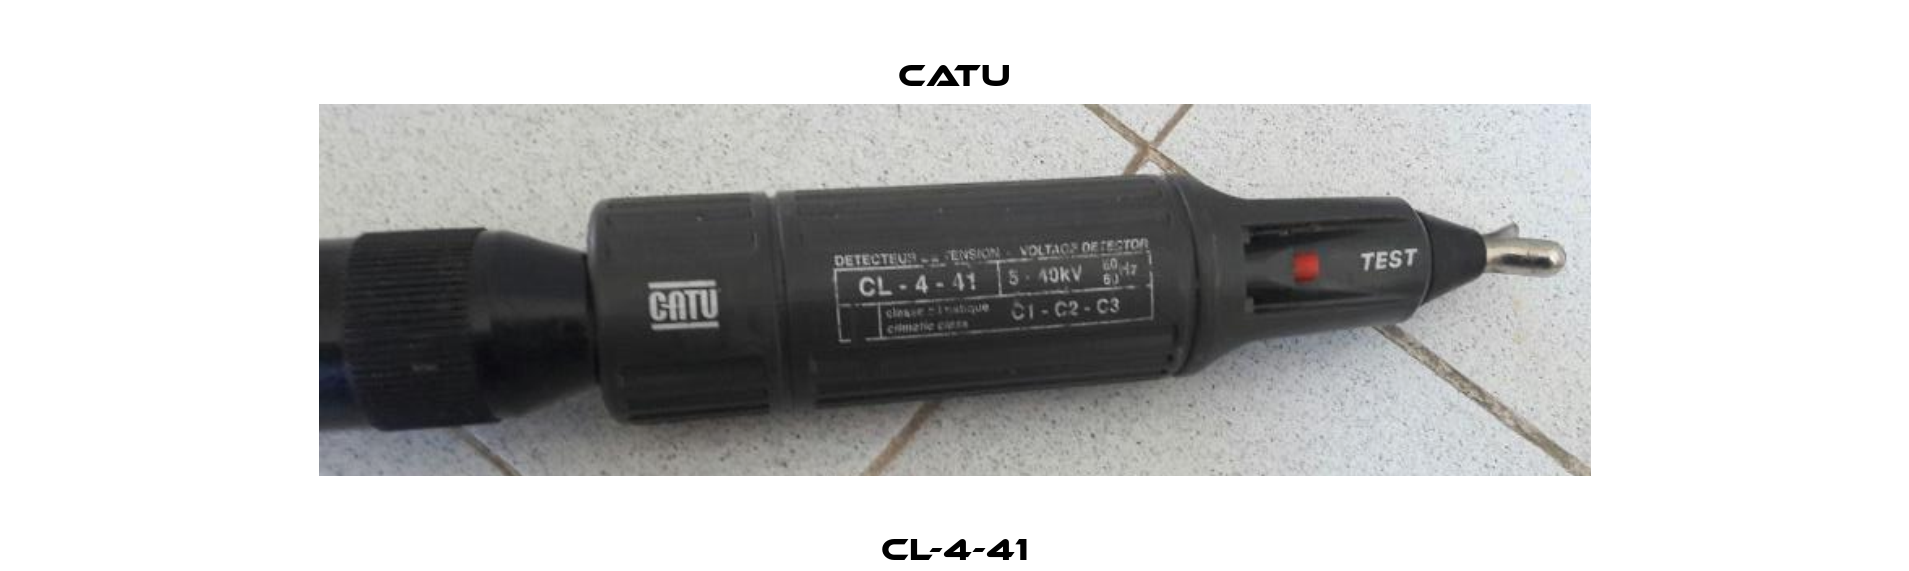 CL-4-41 Catu